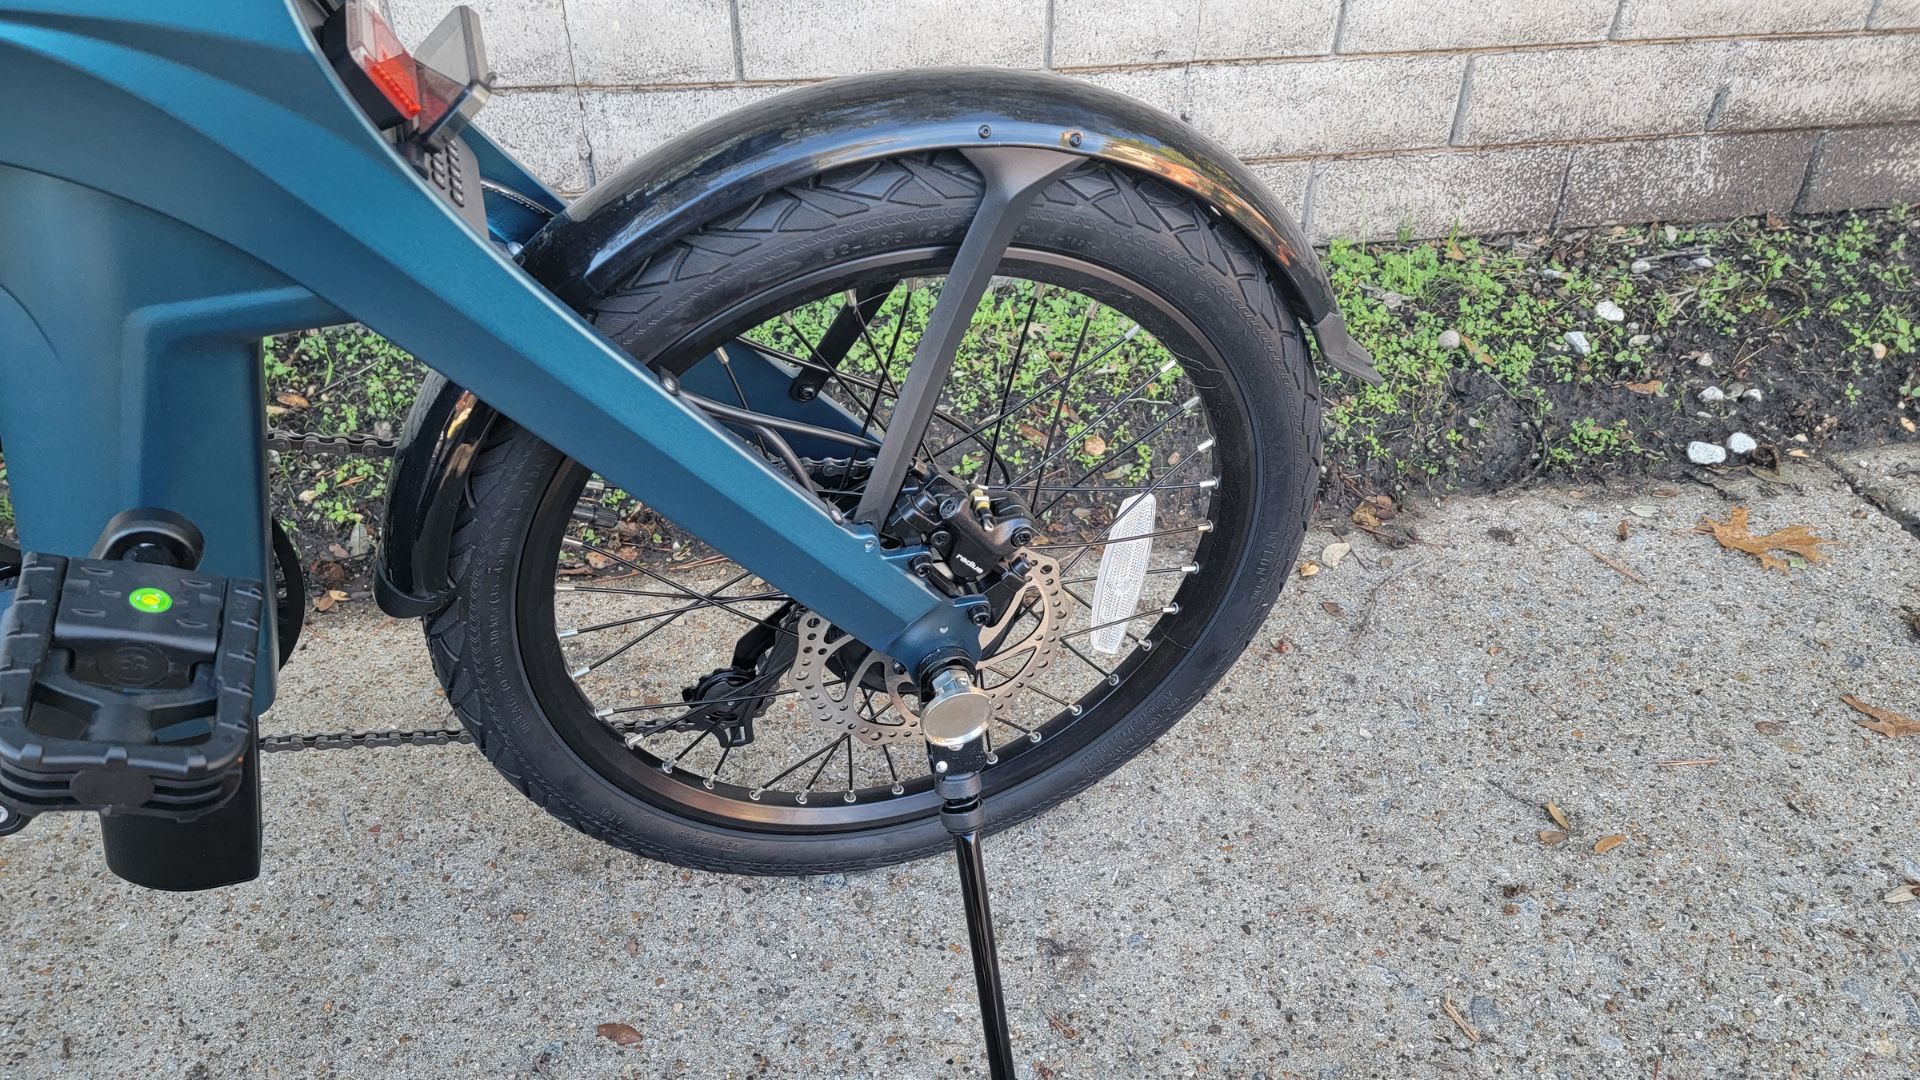 Rear wheel of fiido x folding e-bike